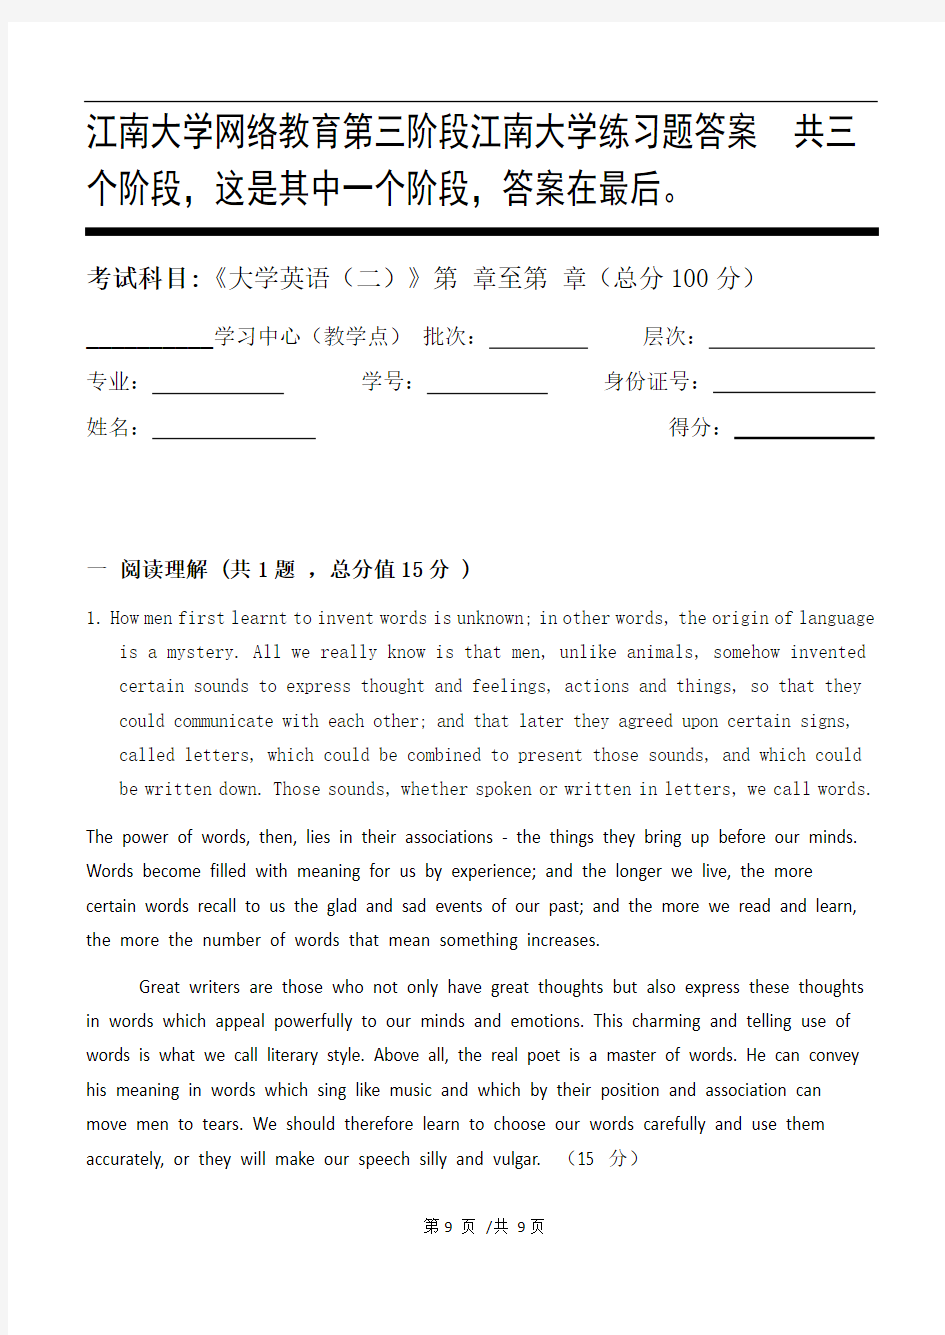 大学英语(二)第3阶段江南大学练习题答案  共三个阶段,这是其中一个阶段,答案在最后。